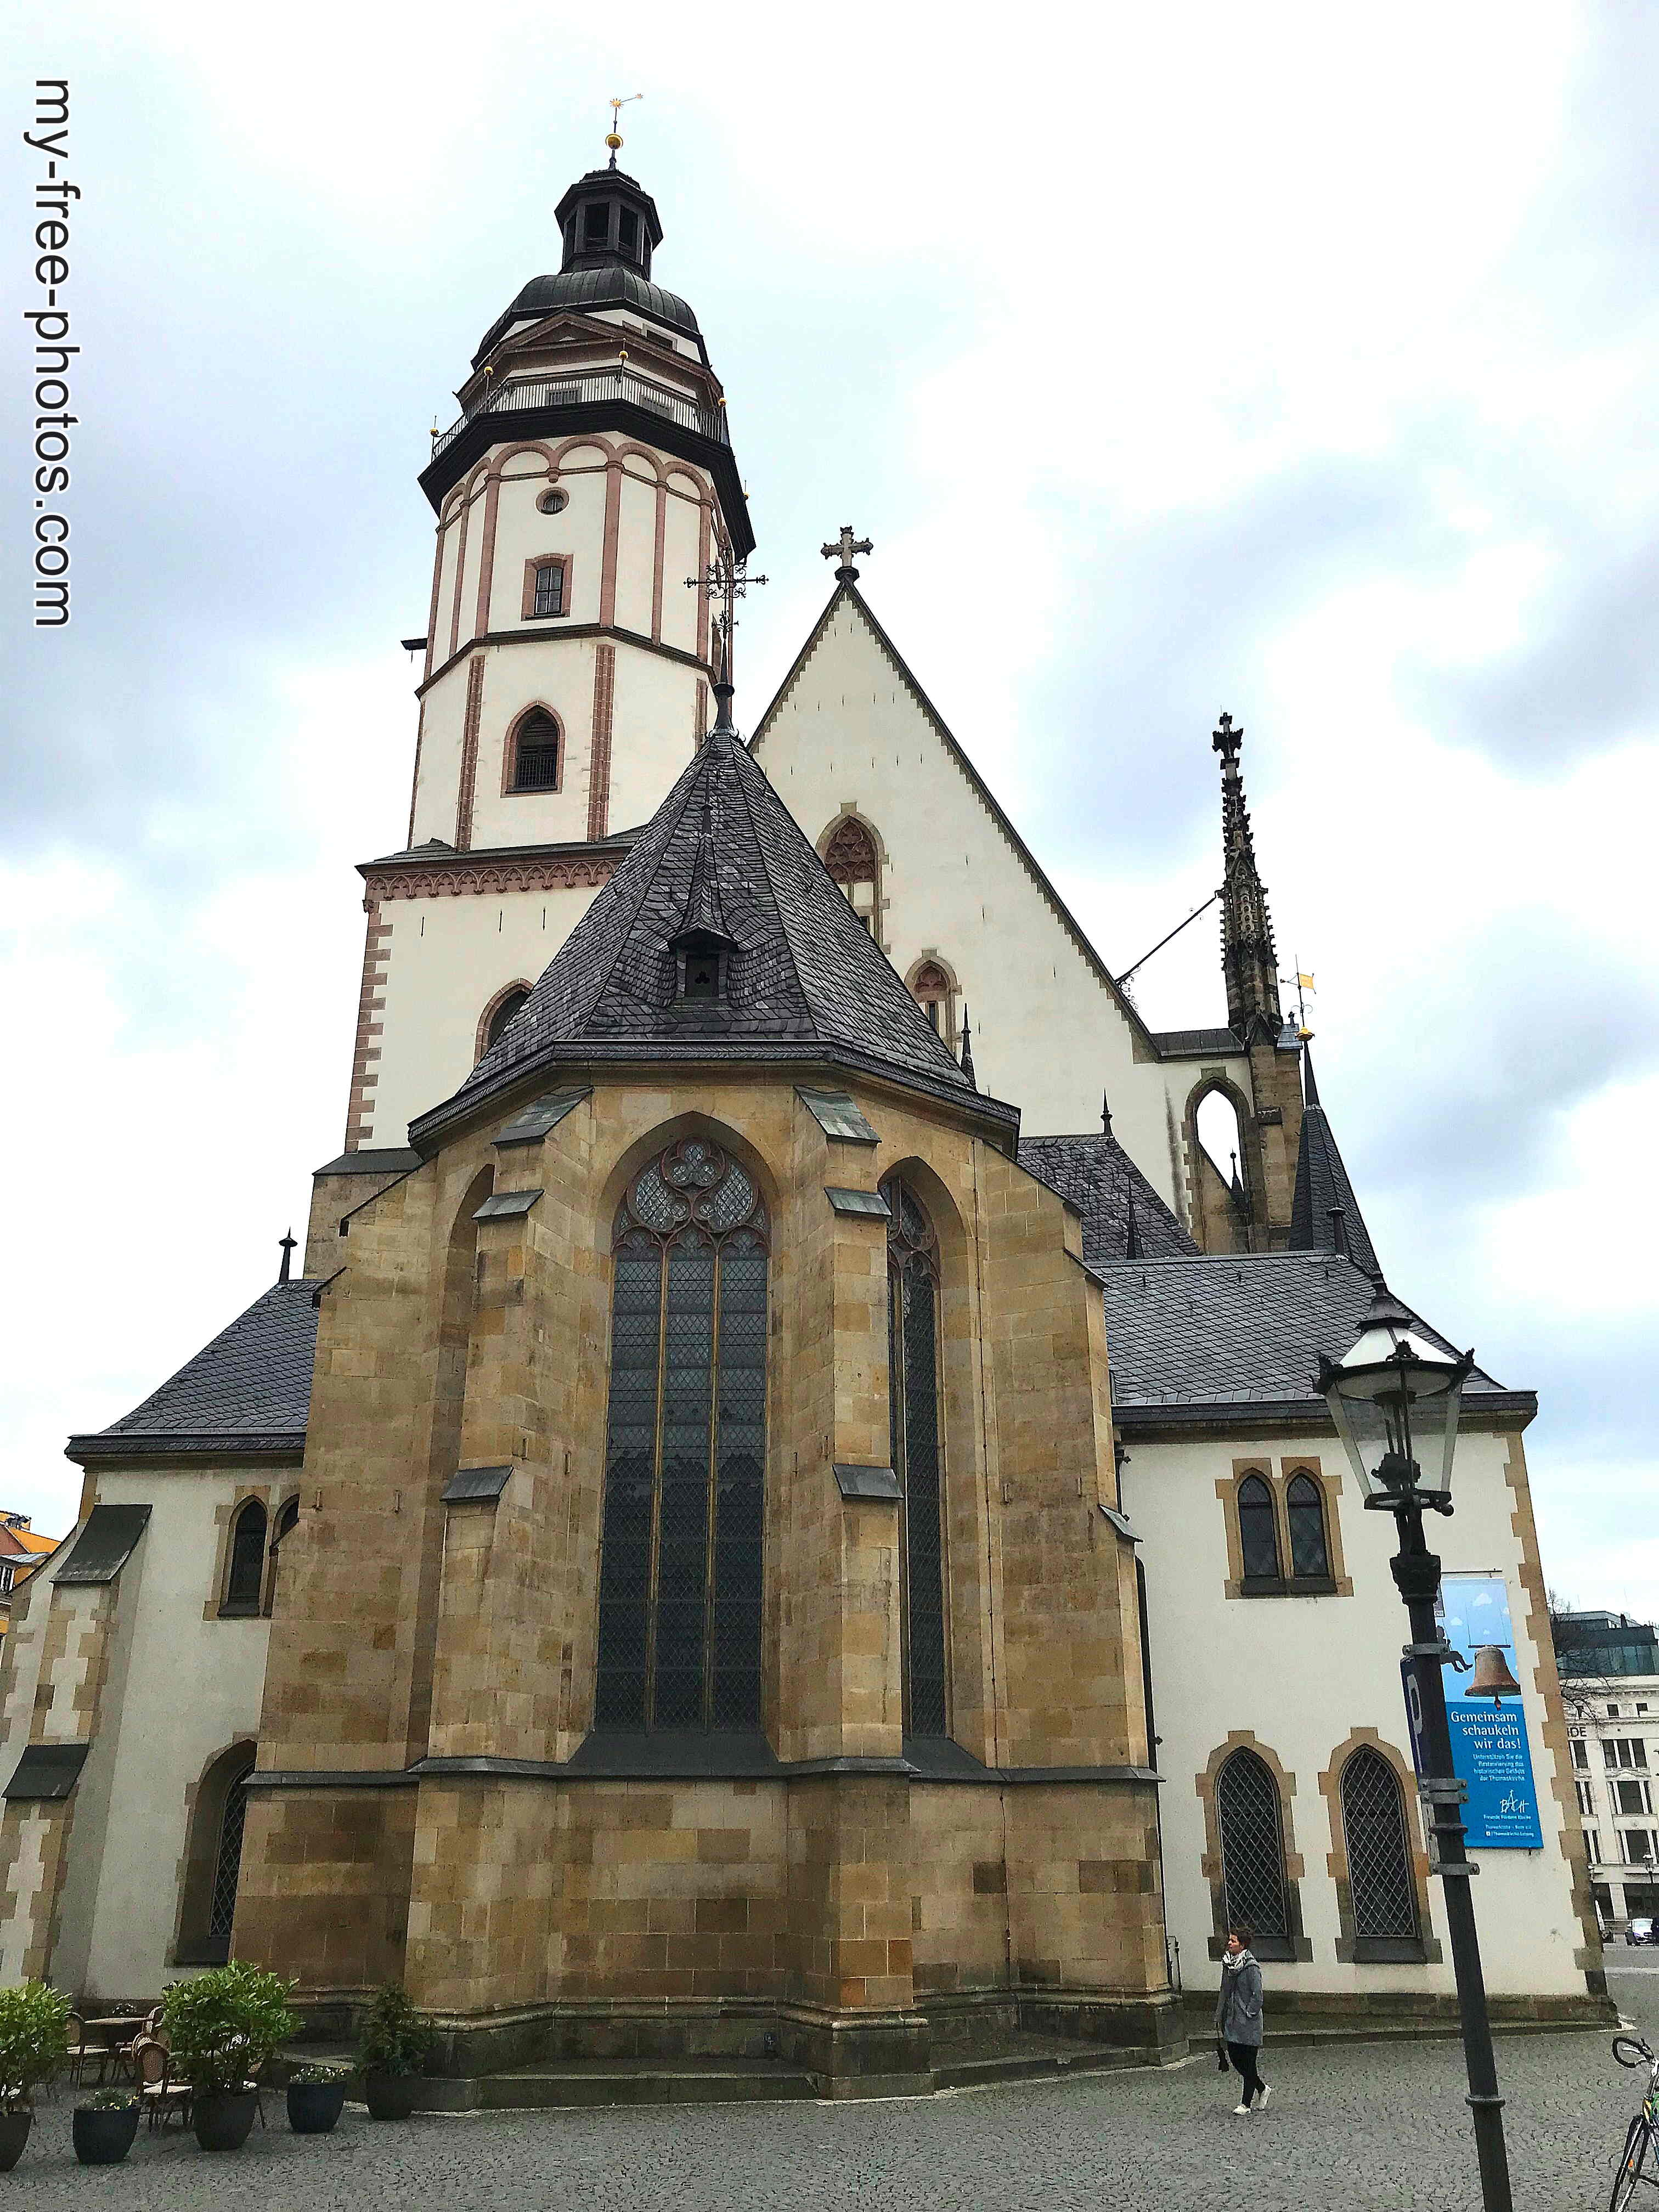 St. Thomas Church Leipzig